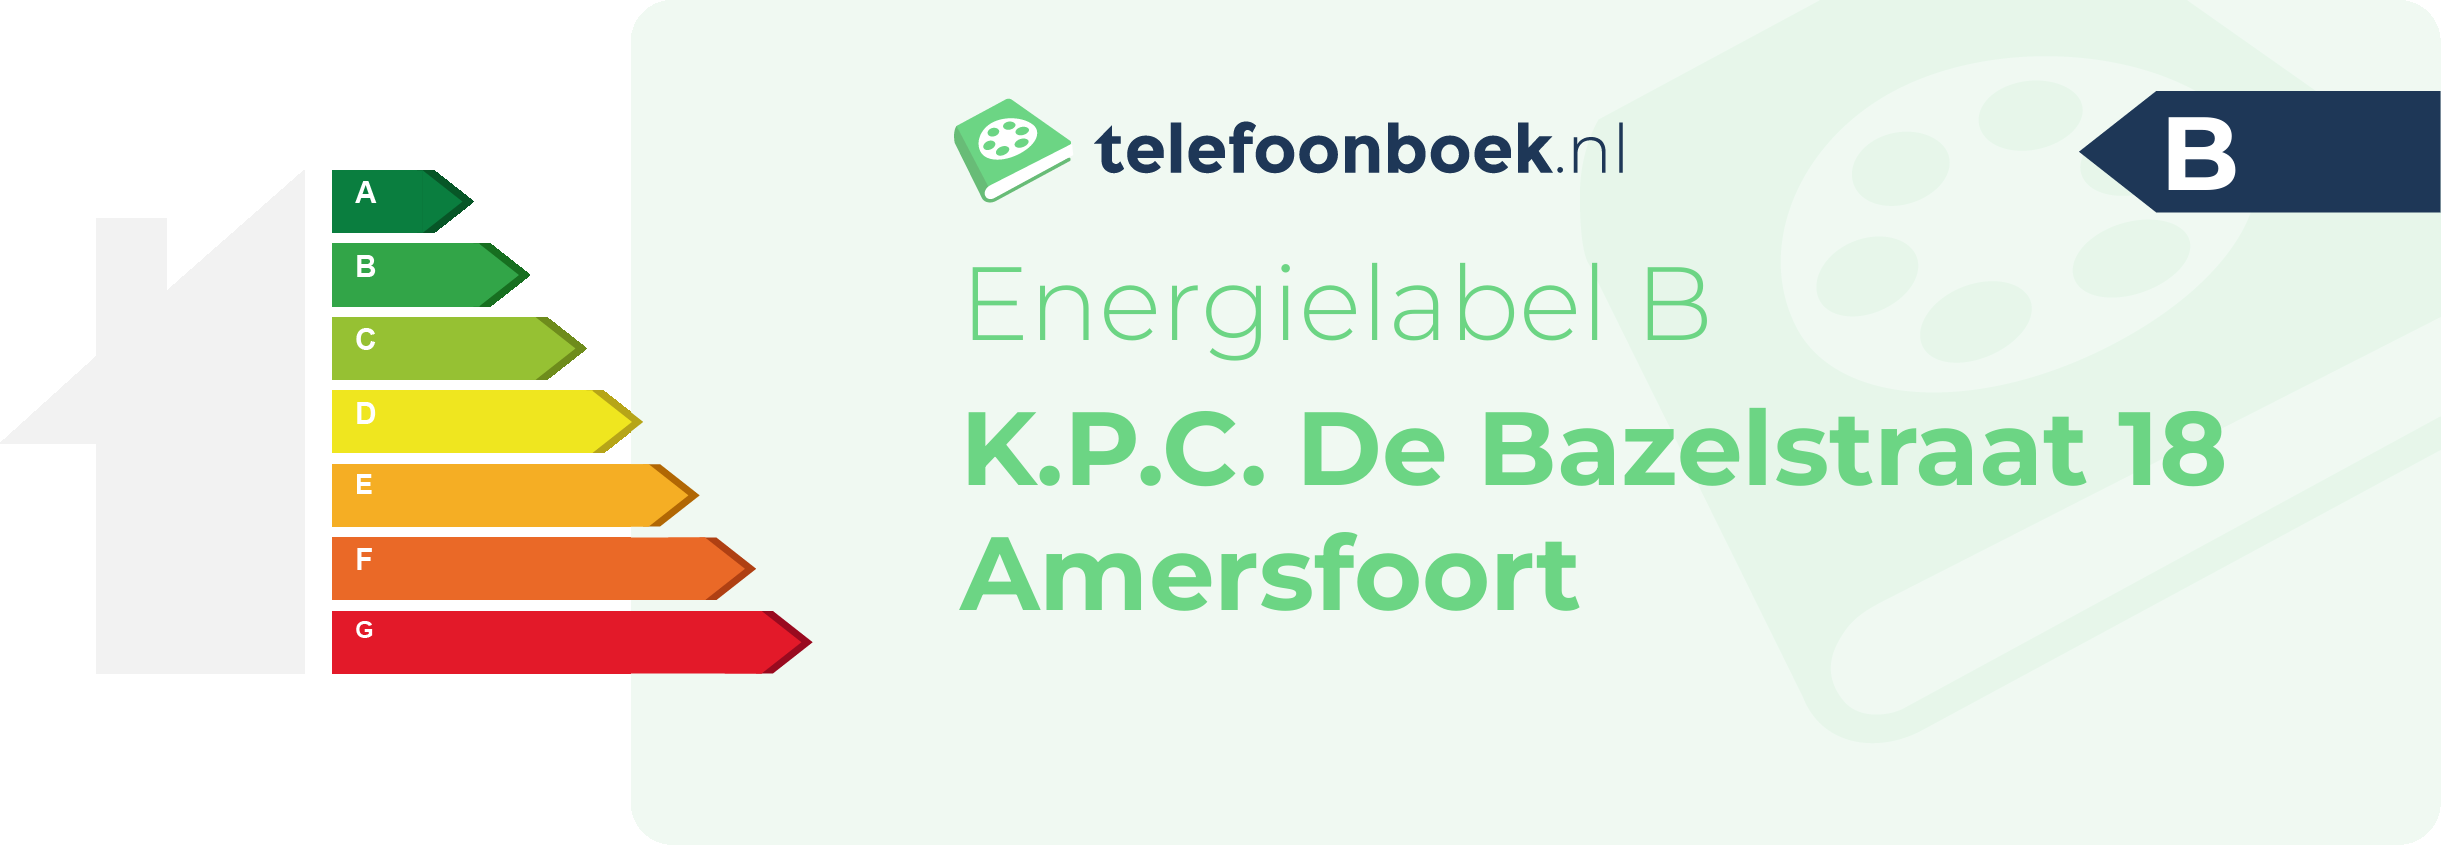 Energielabel K.P.C. De Bazelstraat 18 Amersfoort